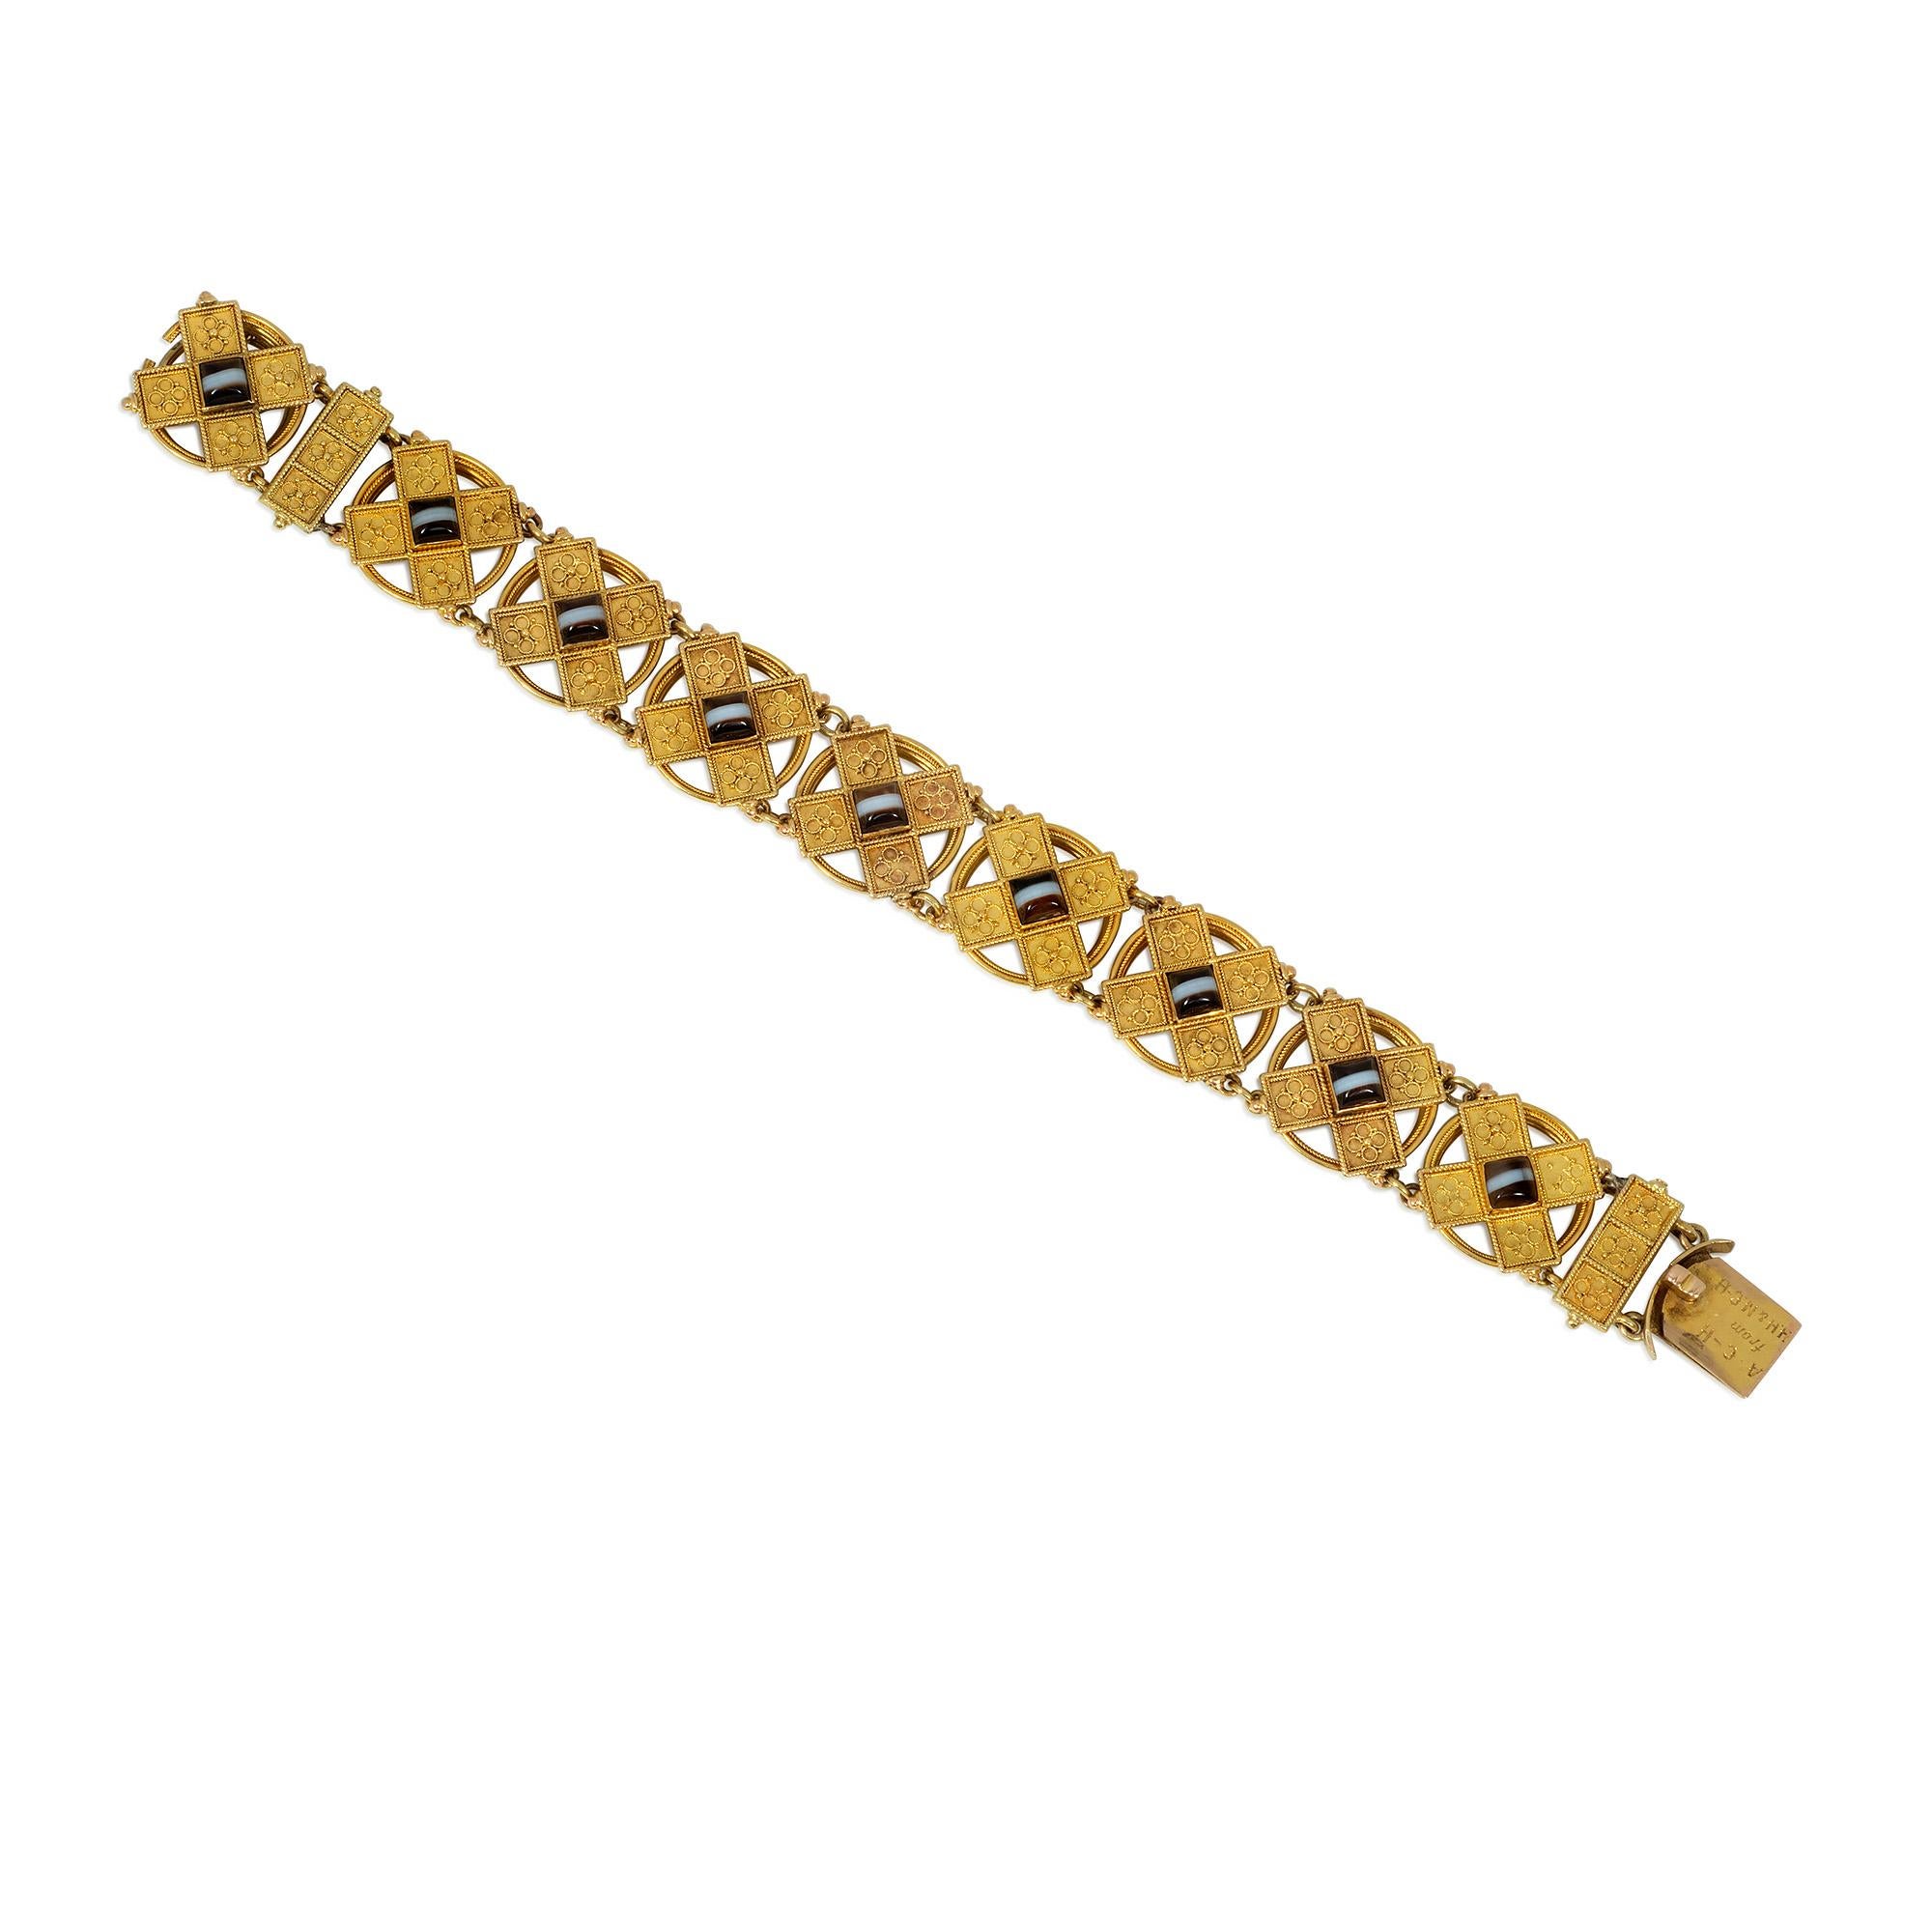 Bracelet antique en or et agate d'époque victorienne de style néo-étrusque, comprenant des maillons circulaires ouverts avec des plaques en forme de X décorées de fil métallique et de granulation, chaque plaque étant centrée par un  agate en forme